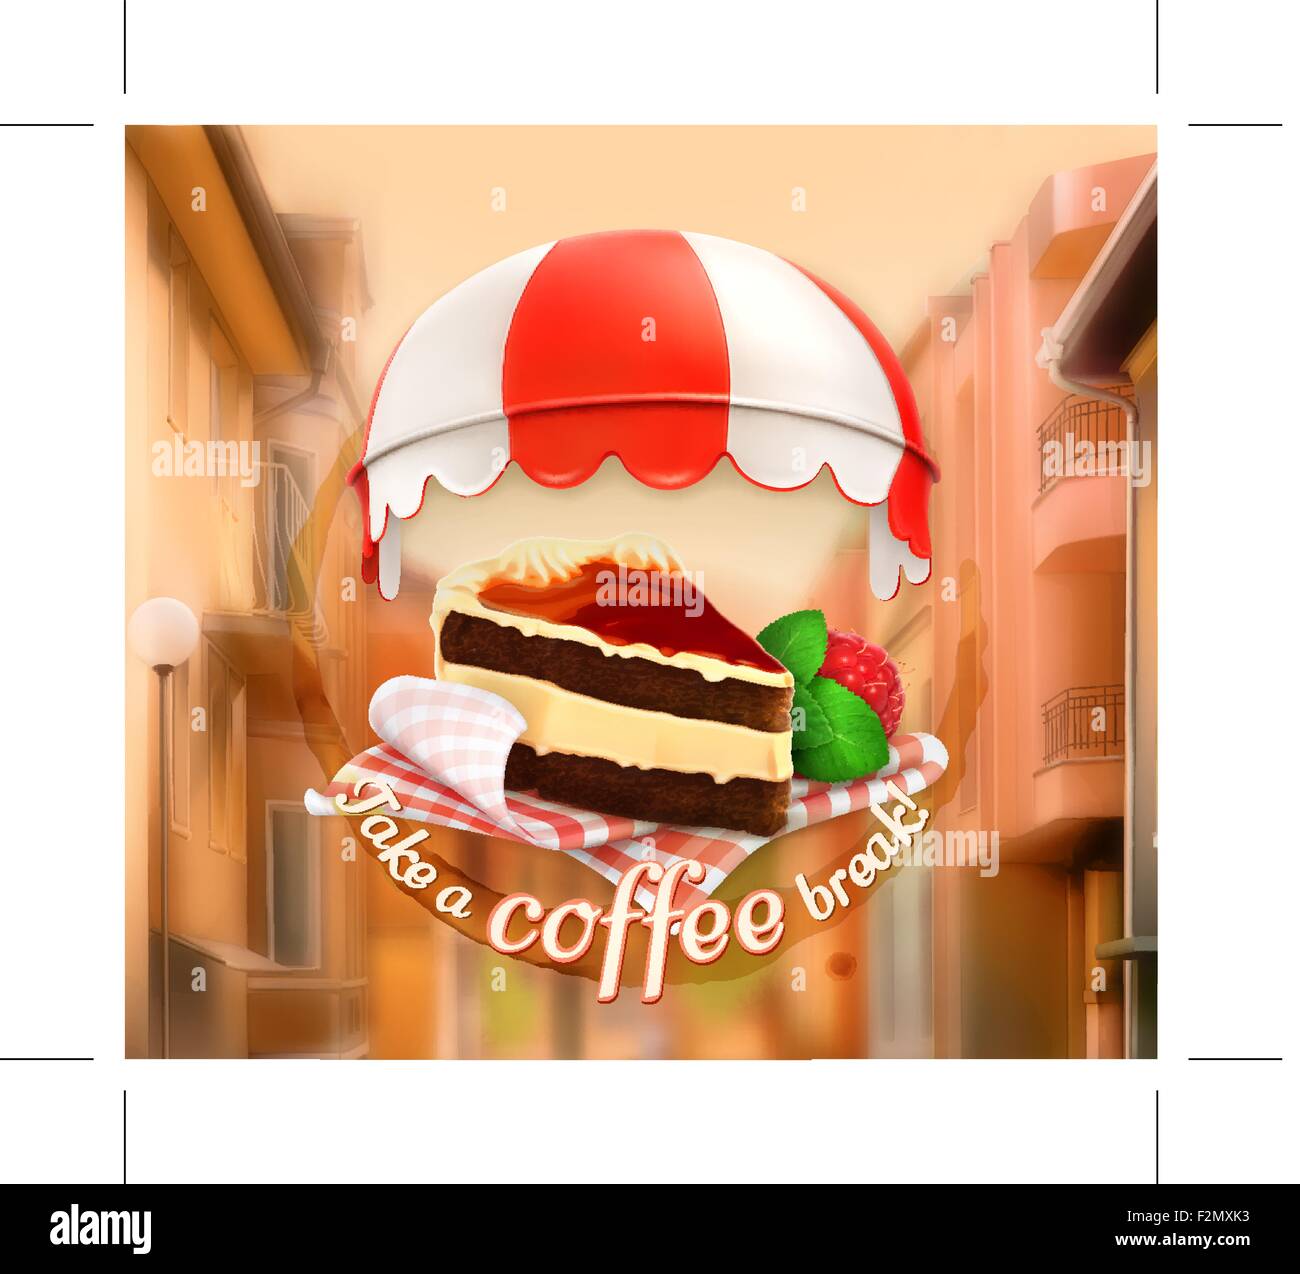 Kaffee-Kuchen, eine Einladung zu einer Tasse Kaffee, Frühstück oder  Mittagessen Zeit, Café-Symbol auf einer Straße Hintergrund mit dem Satz  Label t Stock-Vektorgrafik - Alamy